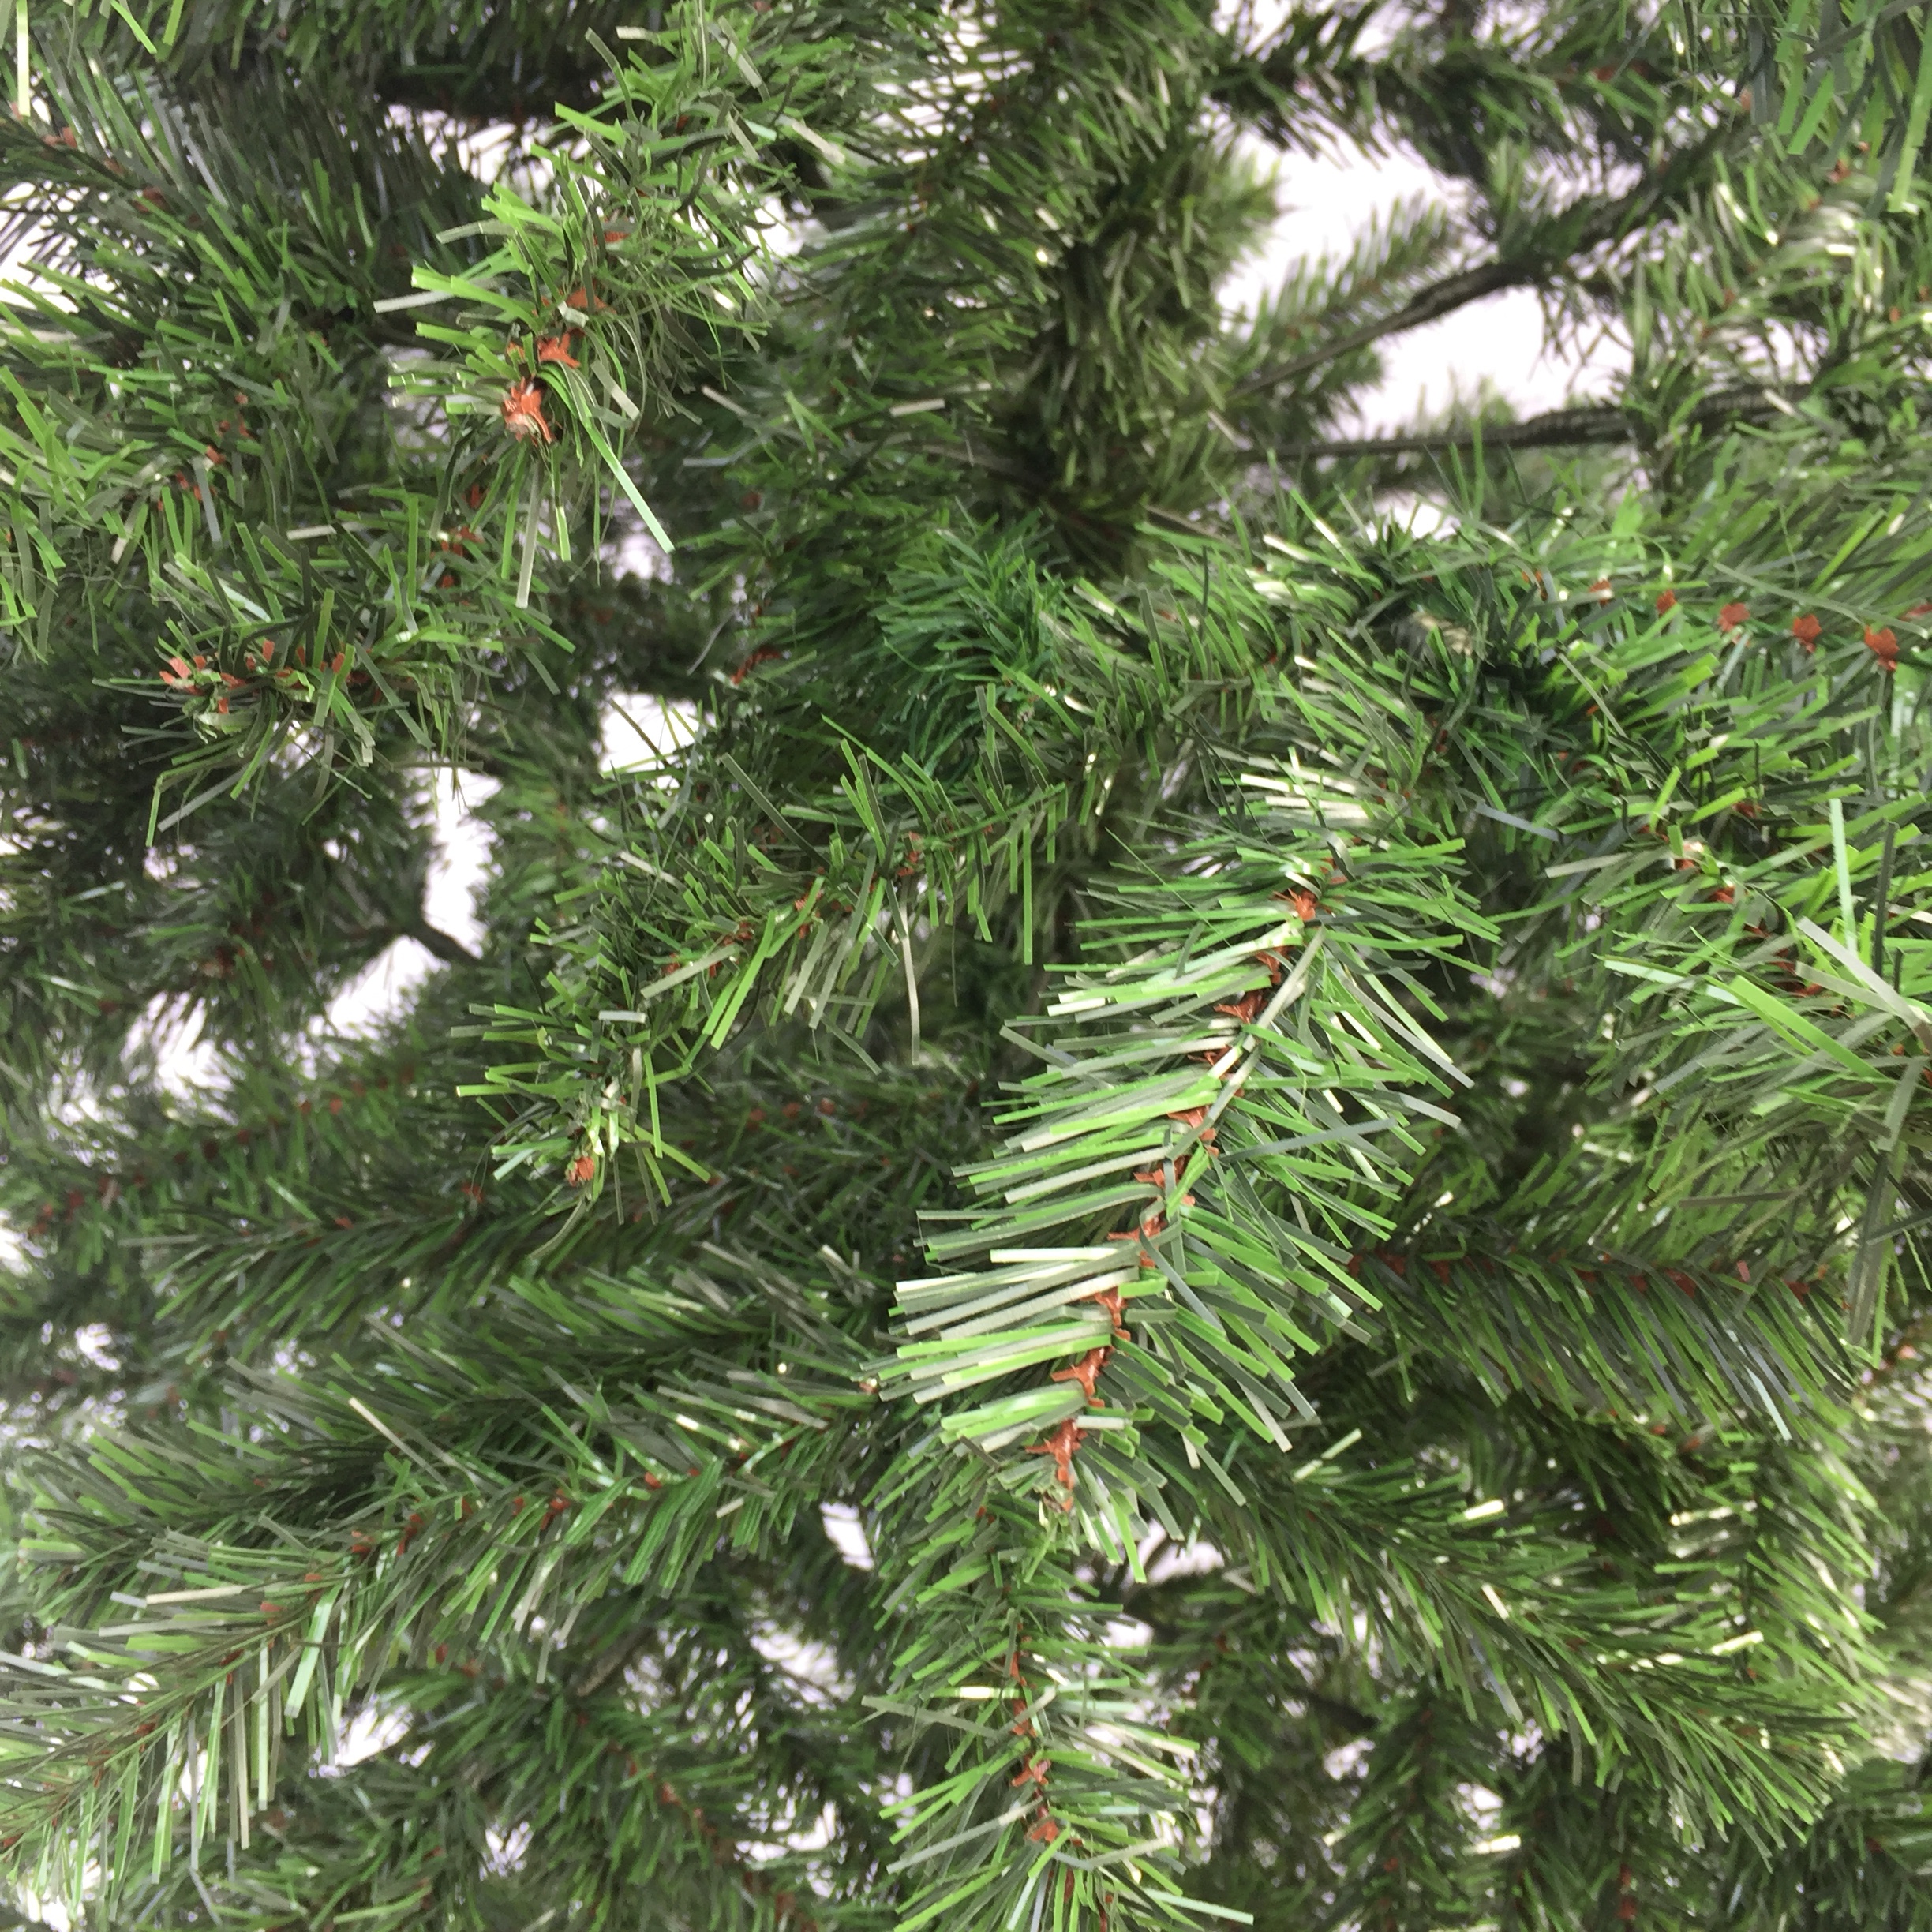 Cây thông lá xanh cao 1,8m trang trí Giáng sinh Noel (Tặng 1 ngôi sao 5 cánh và 2 dây kim tuyến 1,8m )